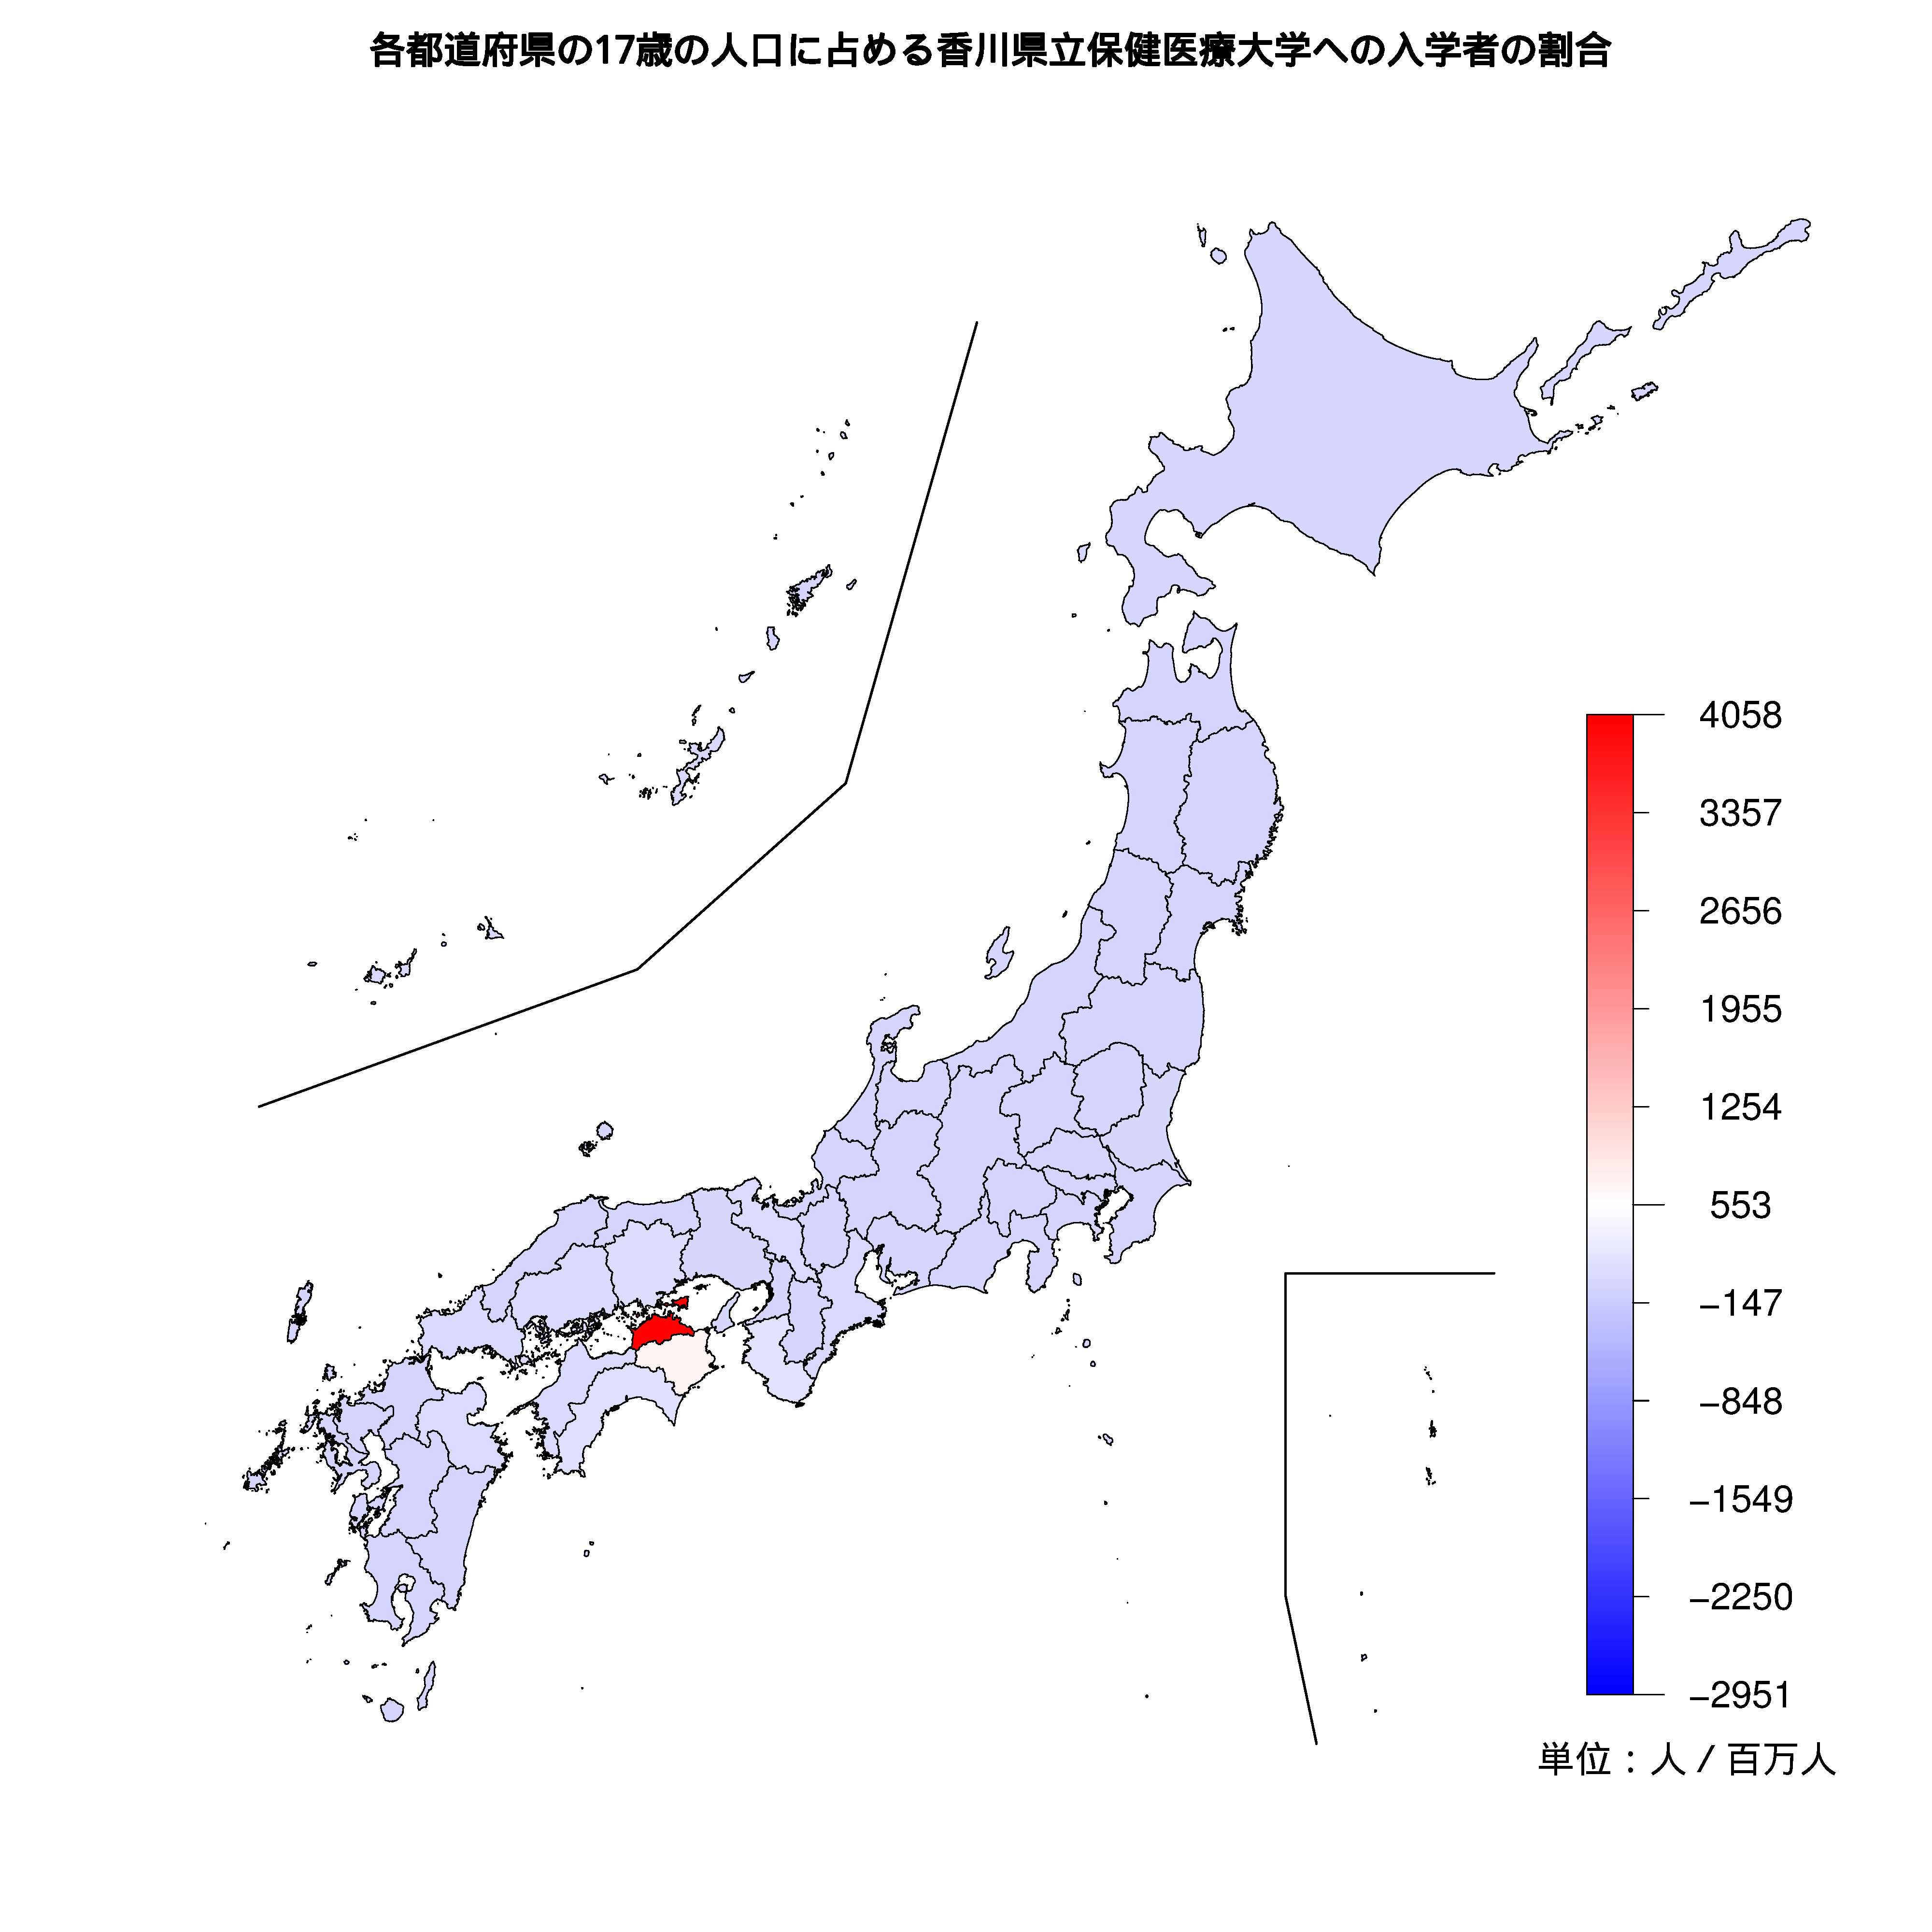 香川県立保健医療大学への入学者が多い都道府県の色分け地図